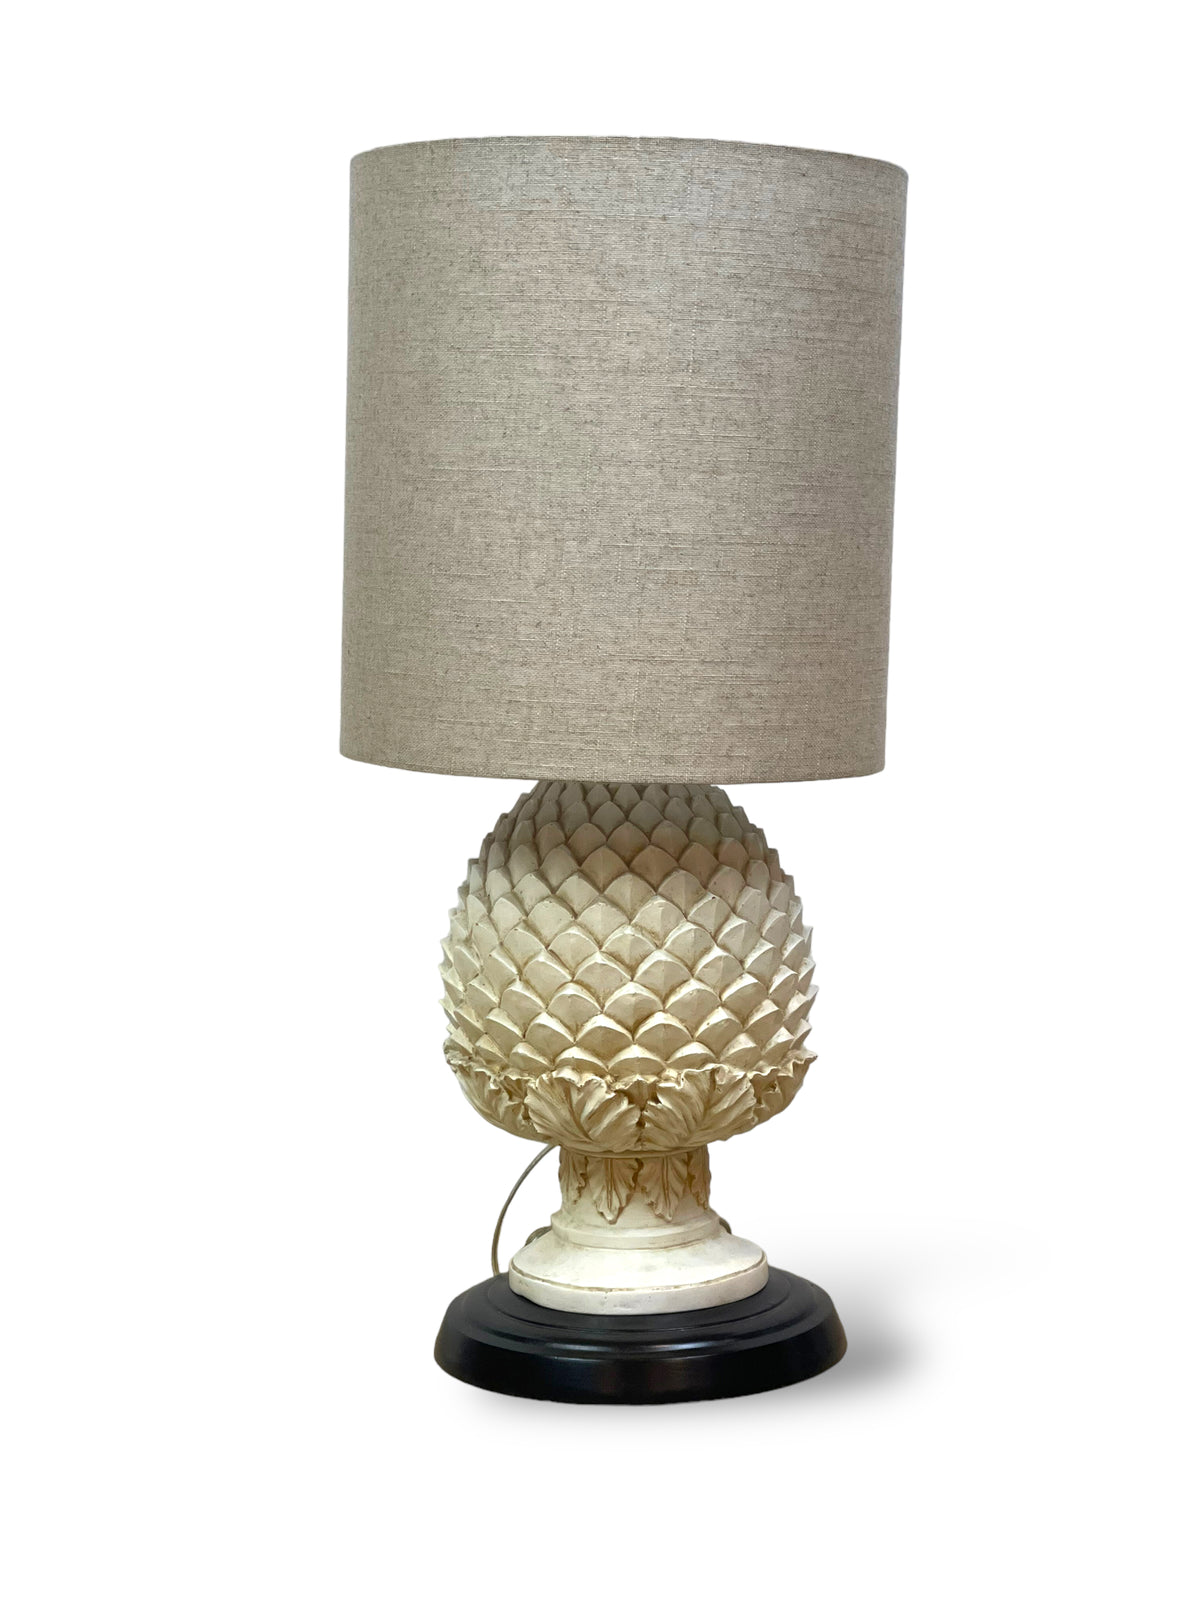 Wooden Artichoke Lamp